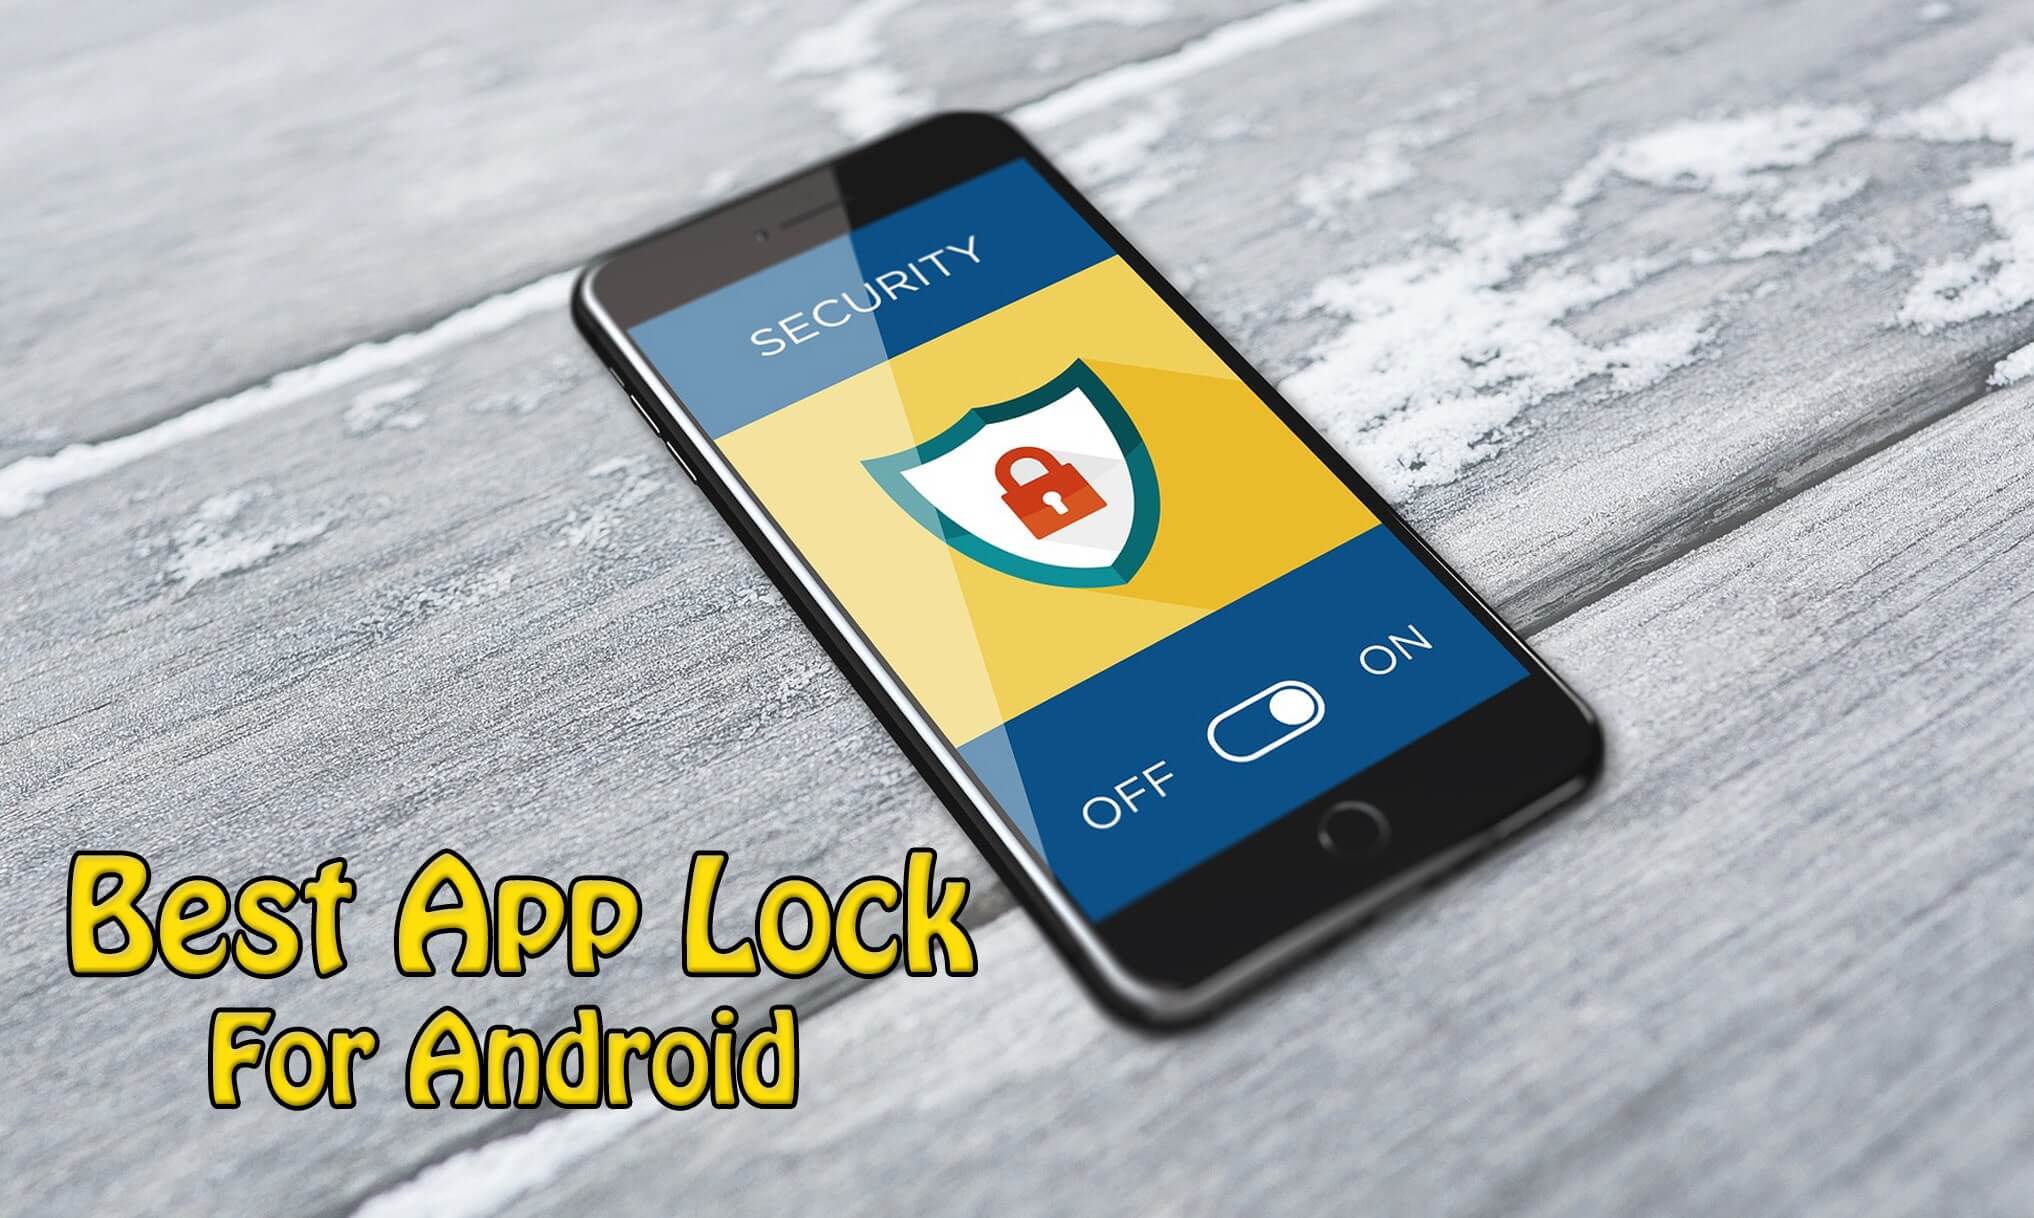 適用於Android設備的最佳Applock替代品最佳應用